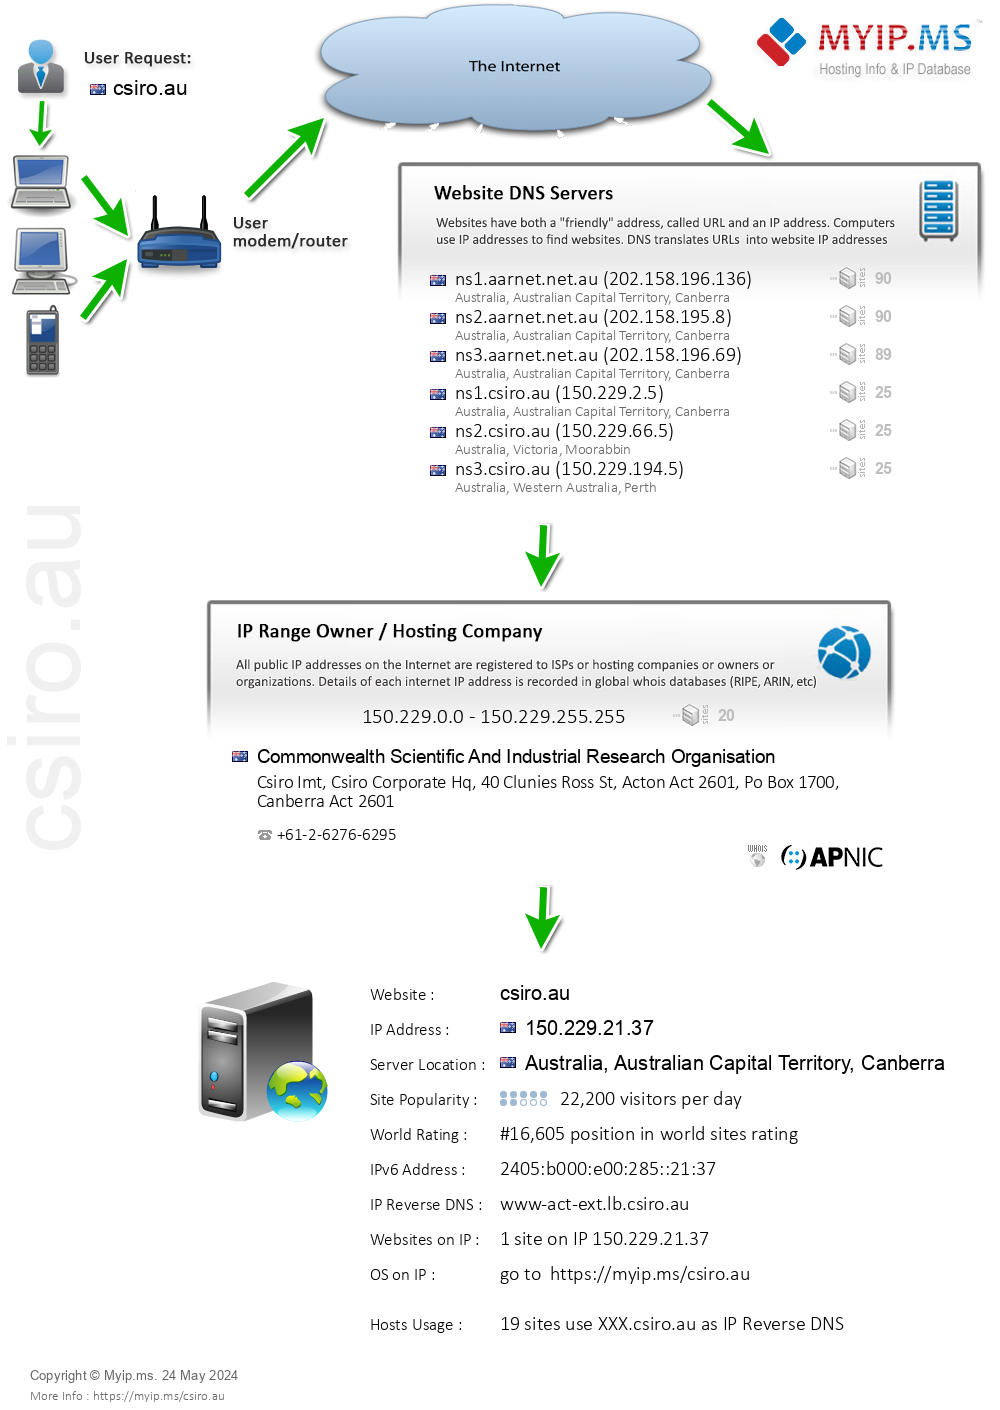 Csiro.au - Website Hosting Visual IP Diagram